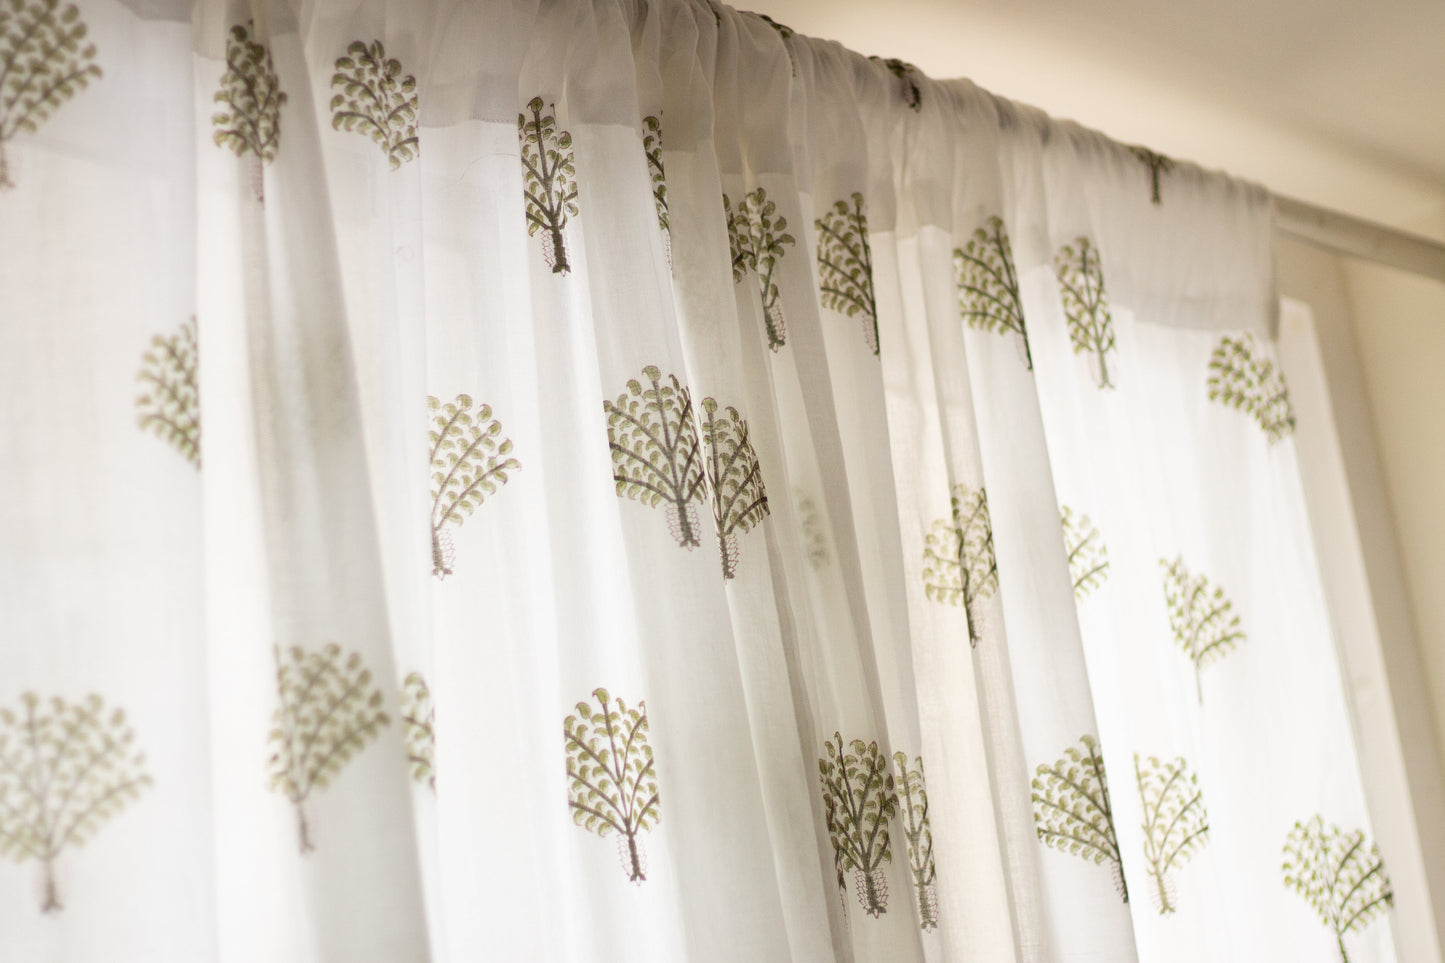 Banyan tree curtains - sheer curtains